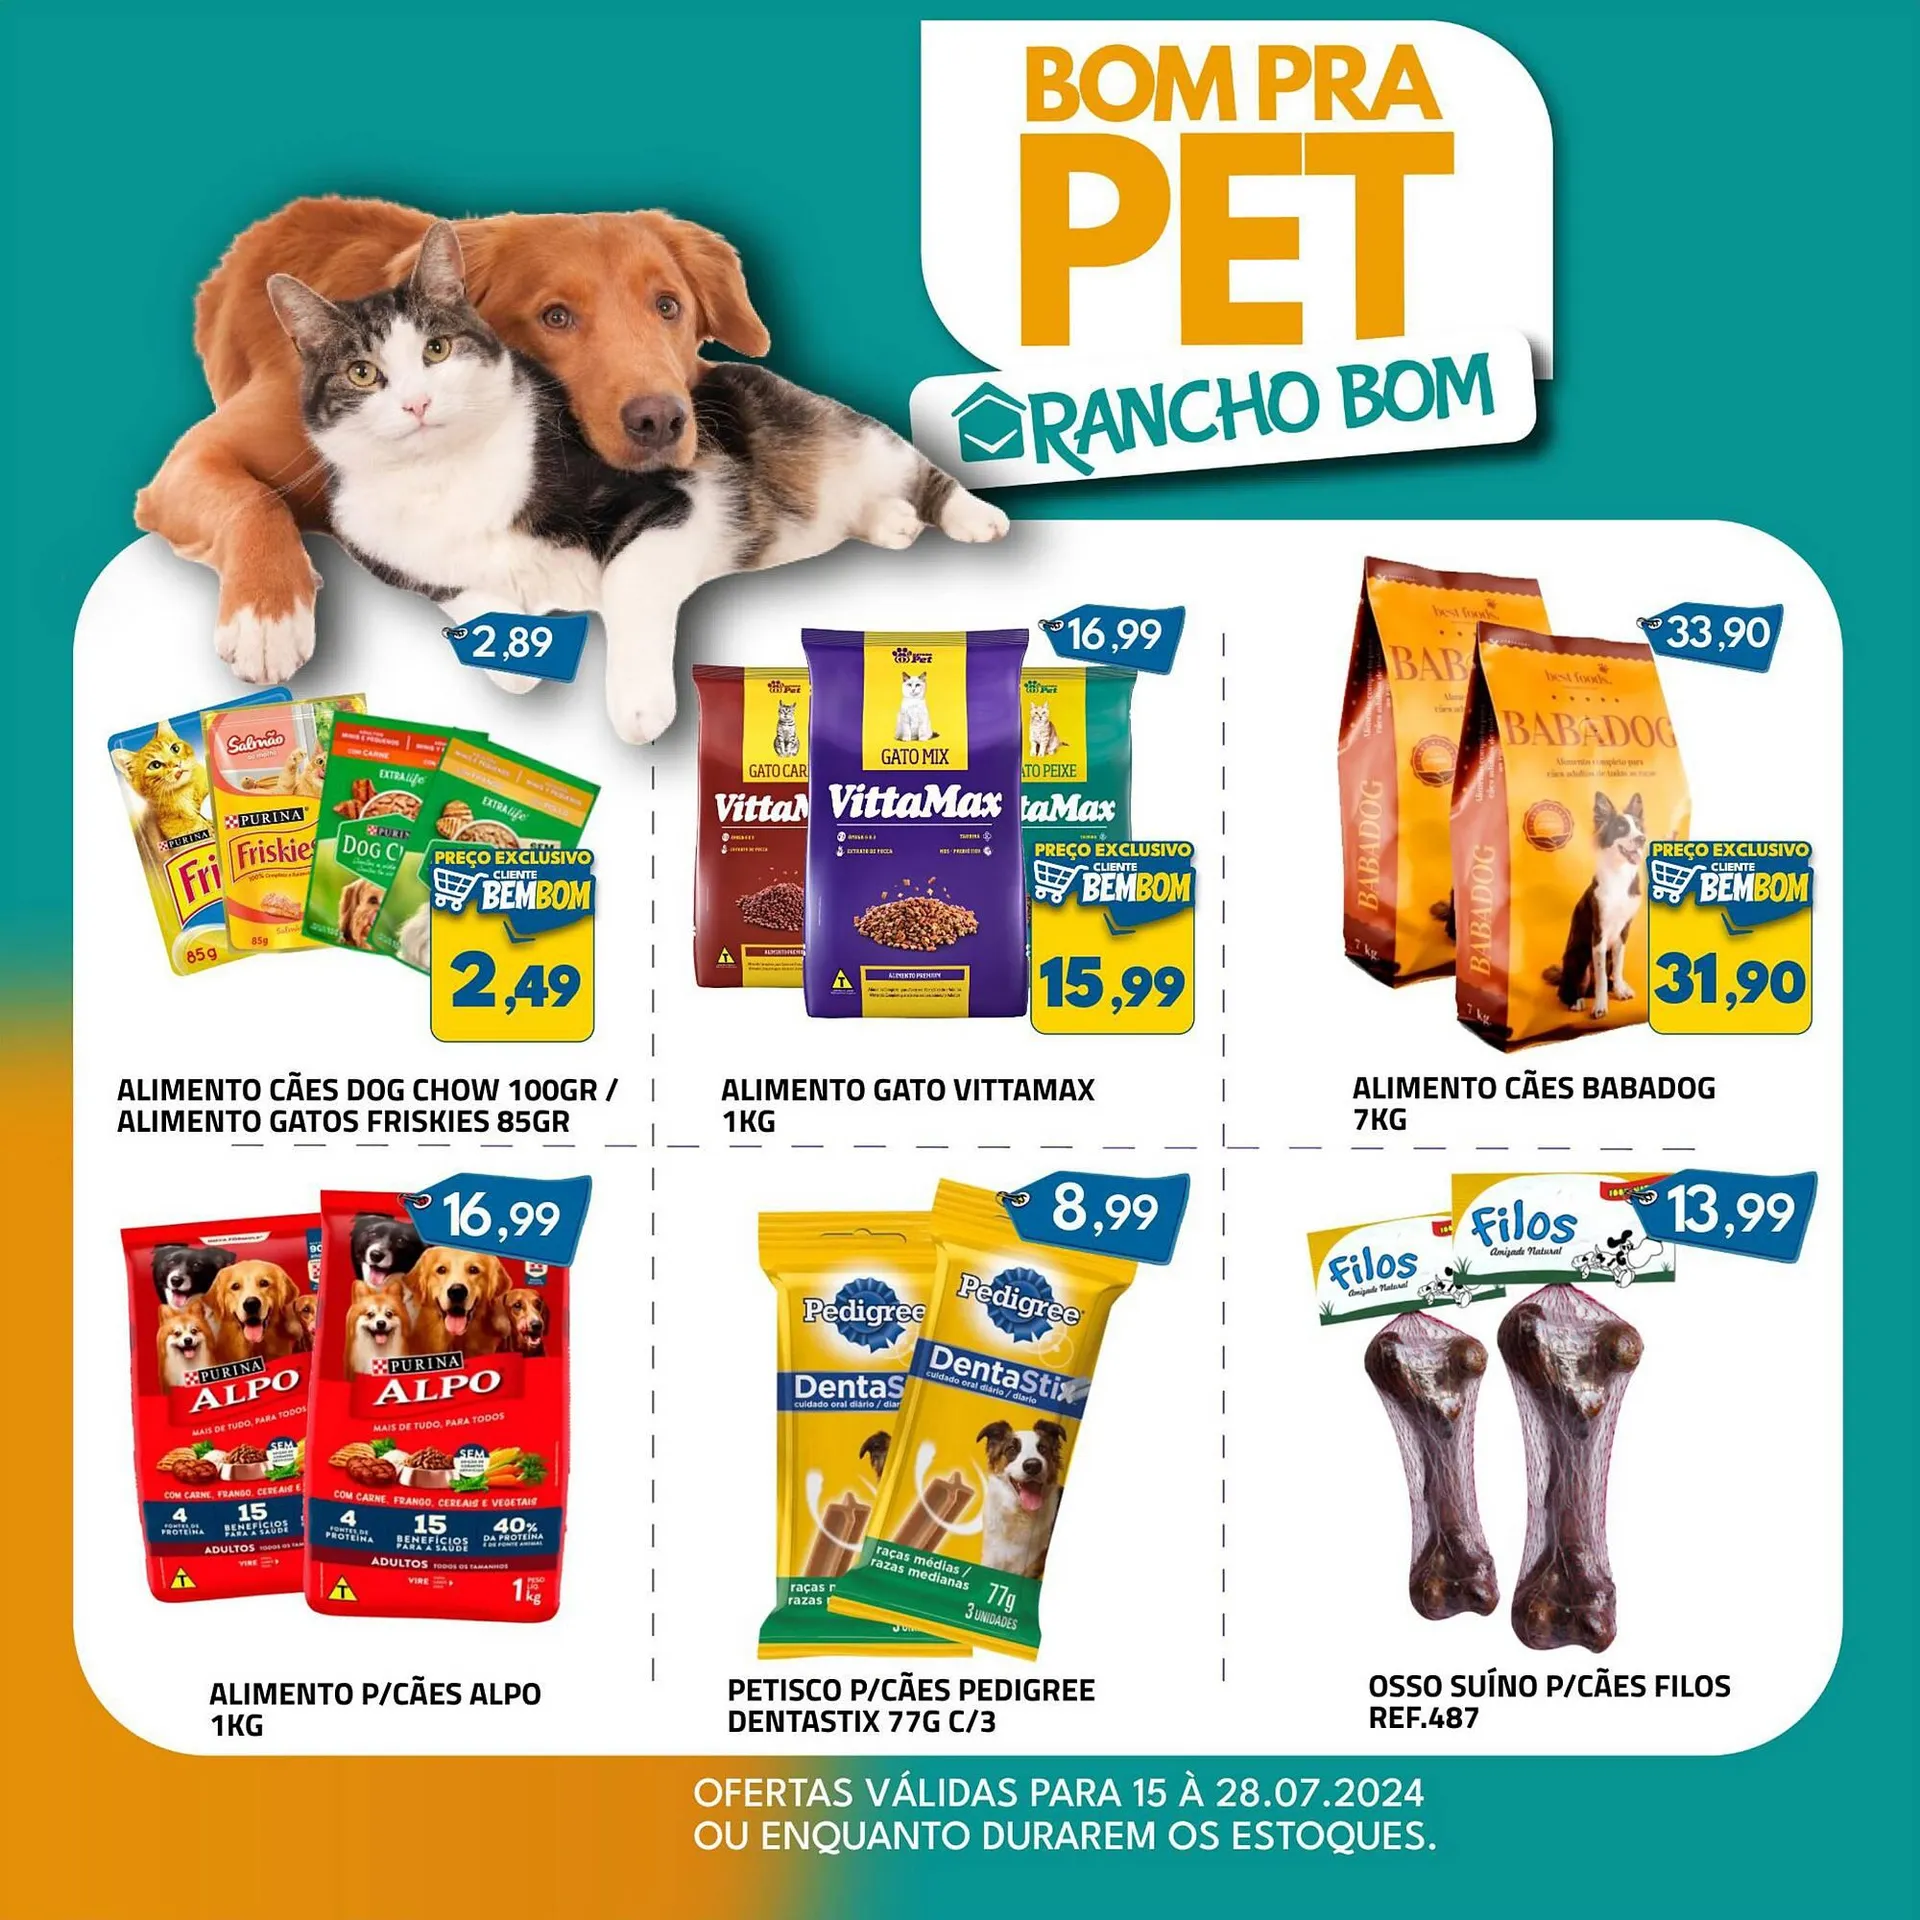 Catálogo Rancho Bom Supermercados - 1